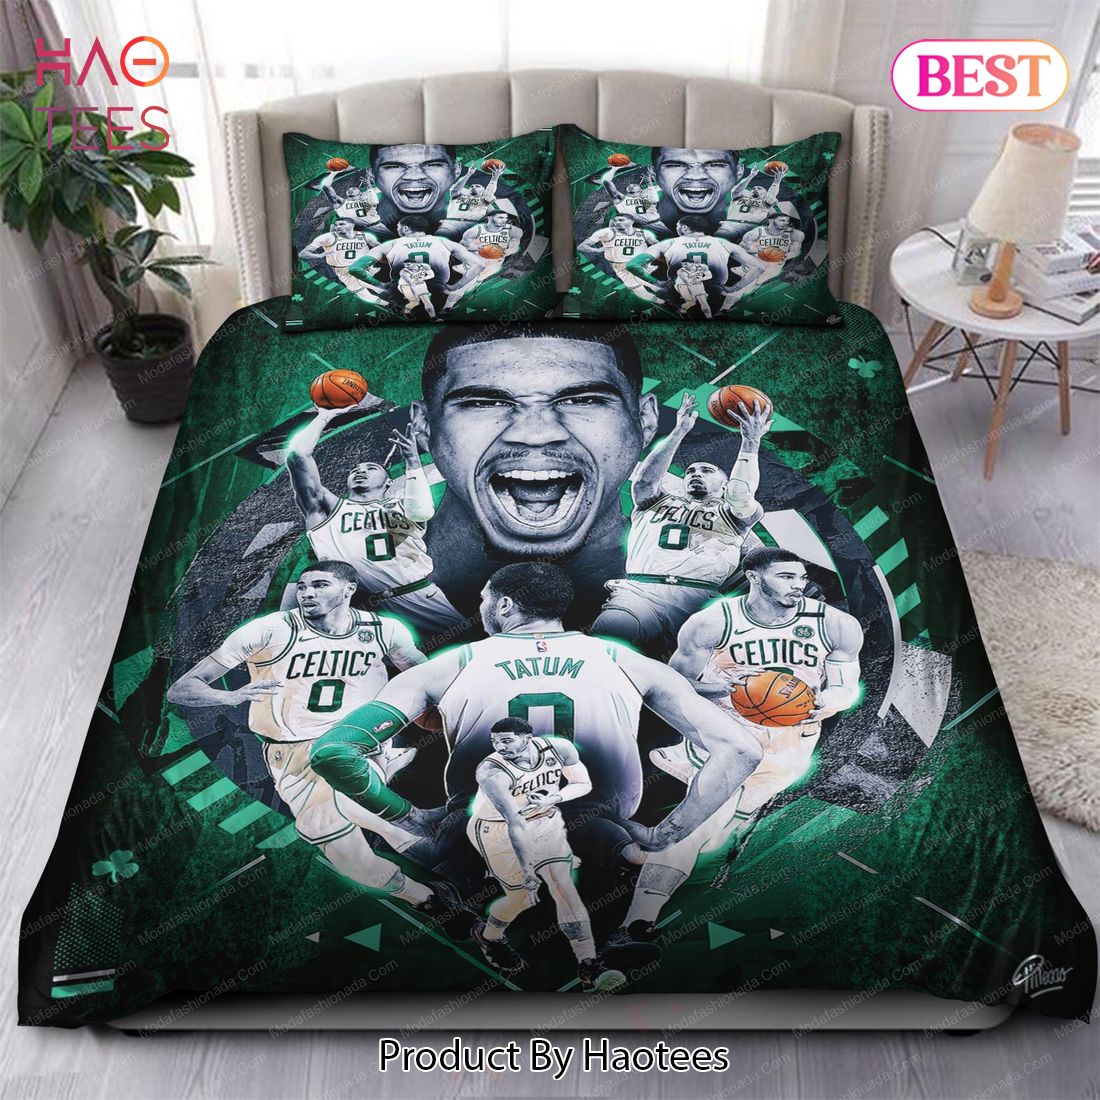 Buy Jayson Tatum Boston Celtics NBA 129 Bedding Sets Bed Sets, Bedroom Sets, Comforter Sets, Duvet Cover, Bedspread